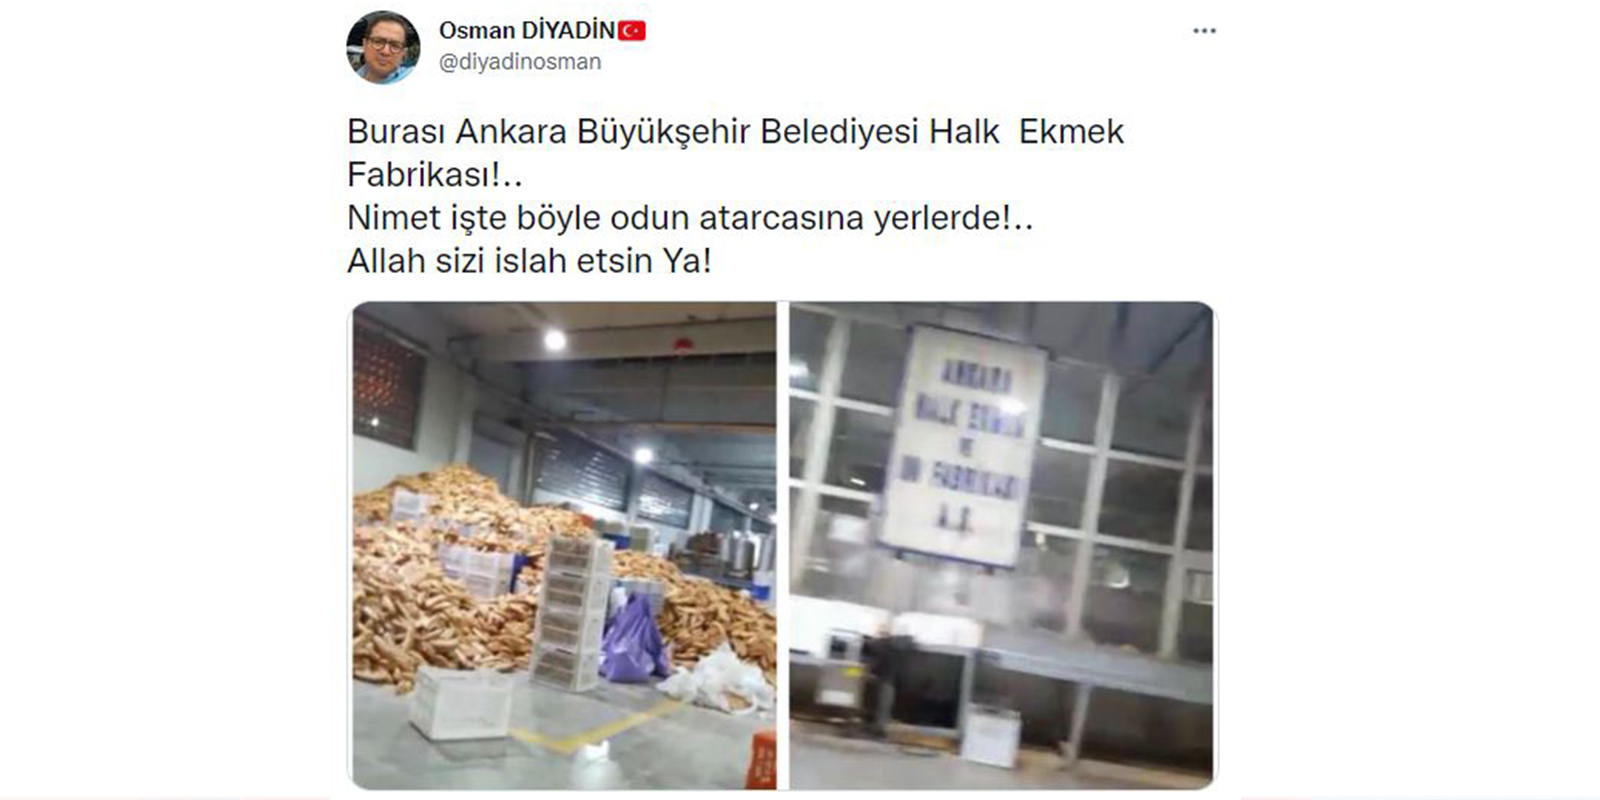 Yazık sizin belediyeciliğinize! Ankara Büyükşehir Belediyesi Halk Ekmek Fabrikası'nda skandal görüntü